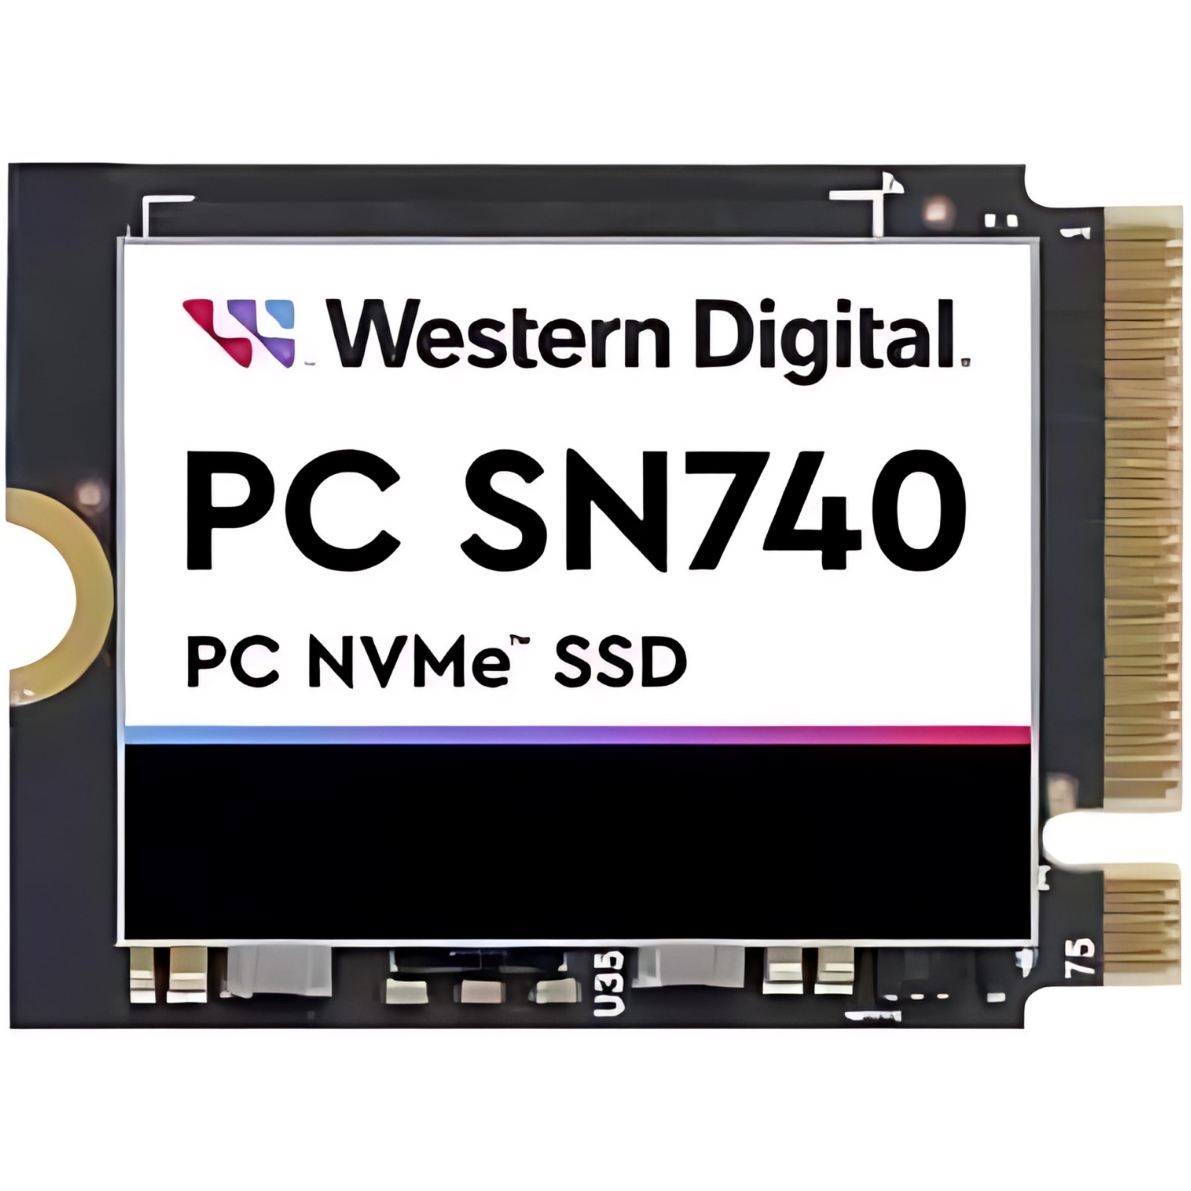 W.DIGITAL SDDPTQD-256G-1012 256GB 4000/2000MB/s M.2 2230 PCI-E NVME SSD